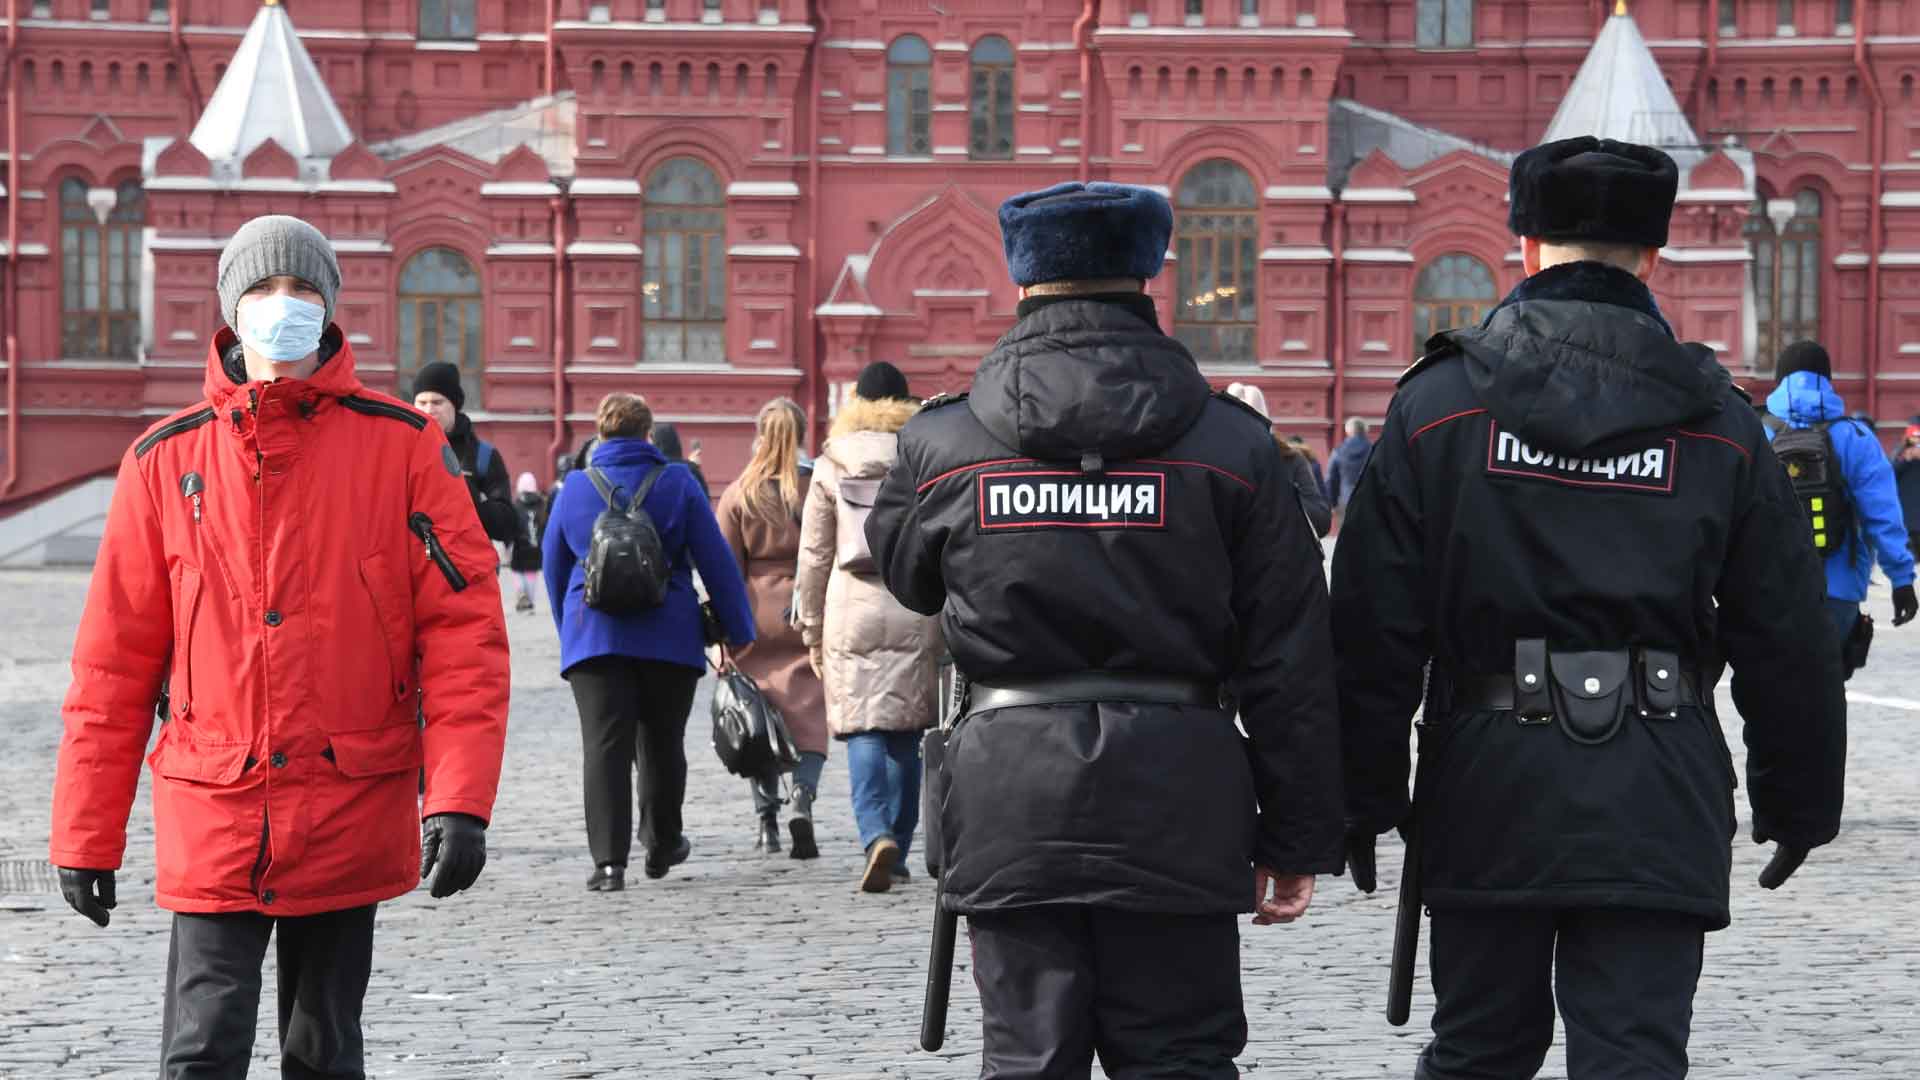 Ответственность грозит за злостное неисполнение указа мэра Фото: © GLOBAL LOOK press / Konstantin Kokoshkin